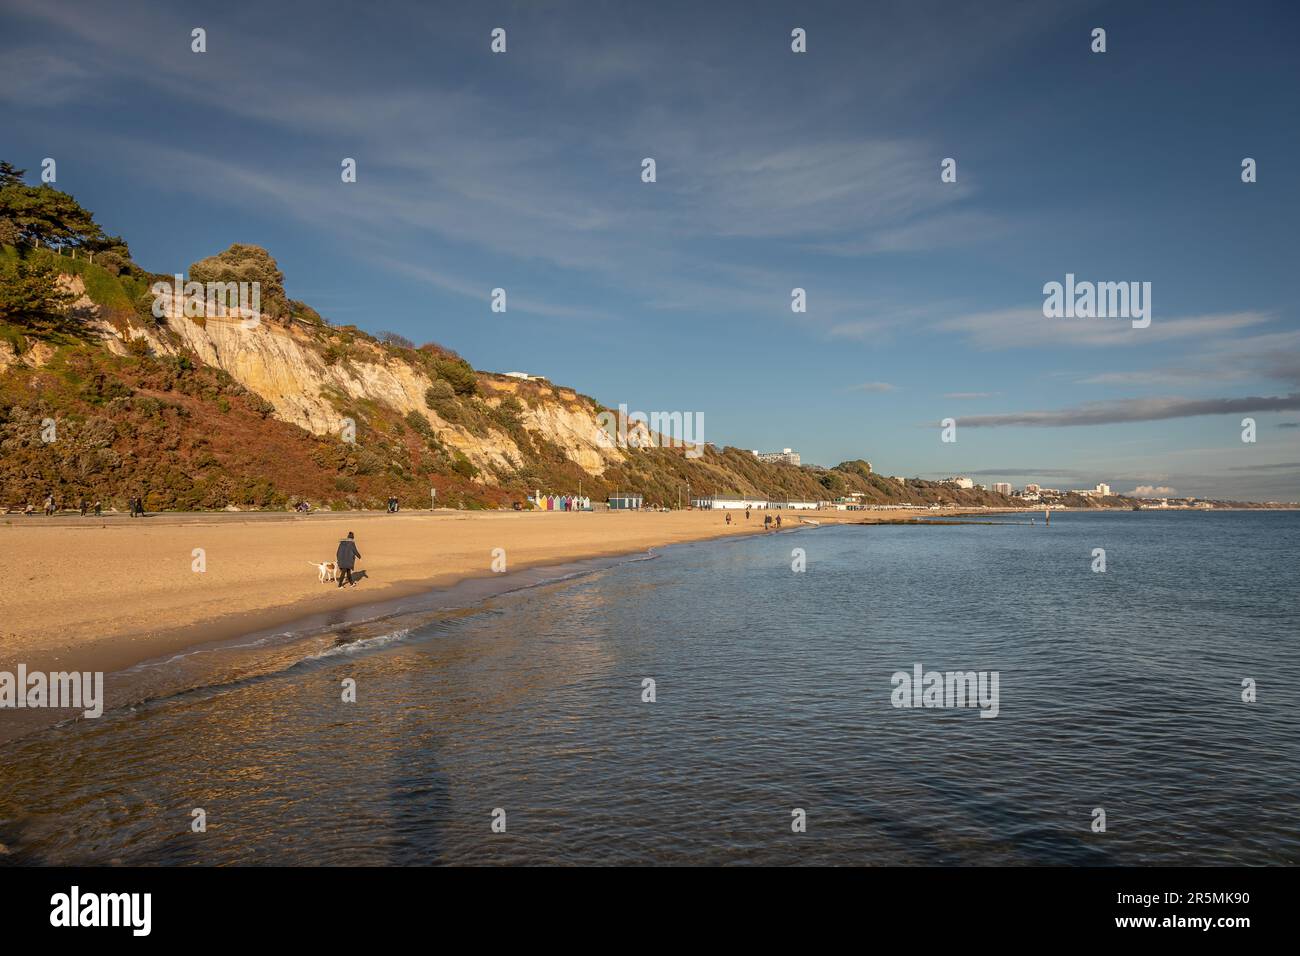 Branksome Chine beach, Bournemouth, Dorset, UK Stock Photo